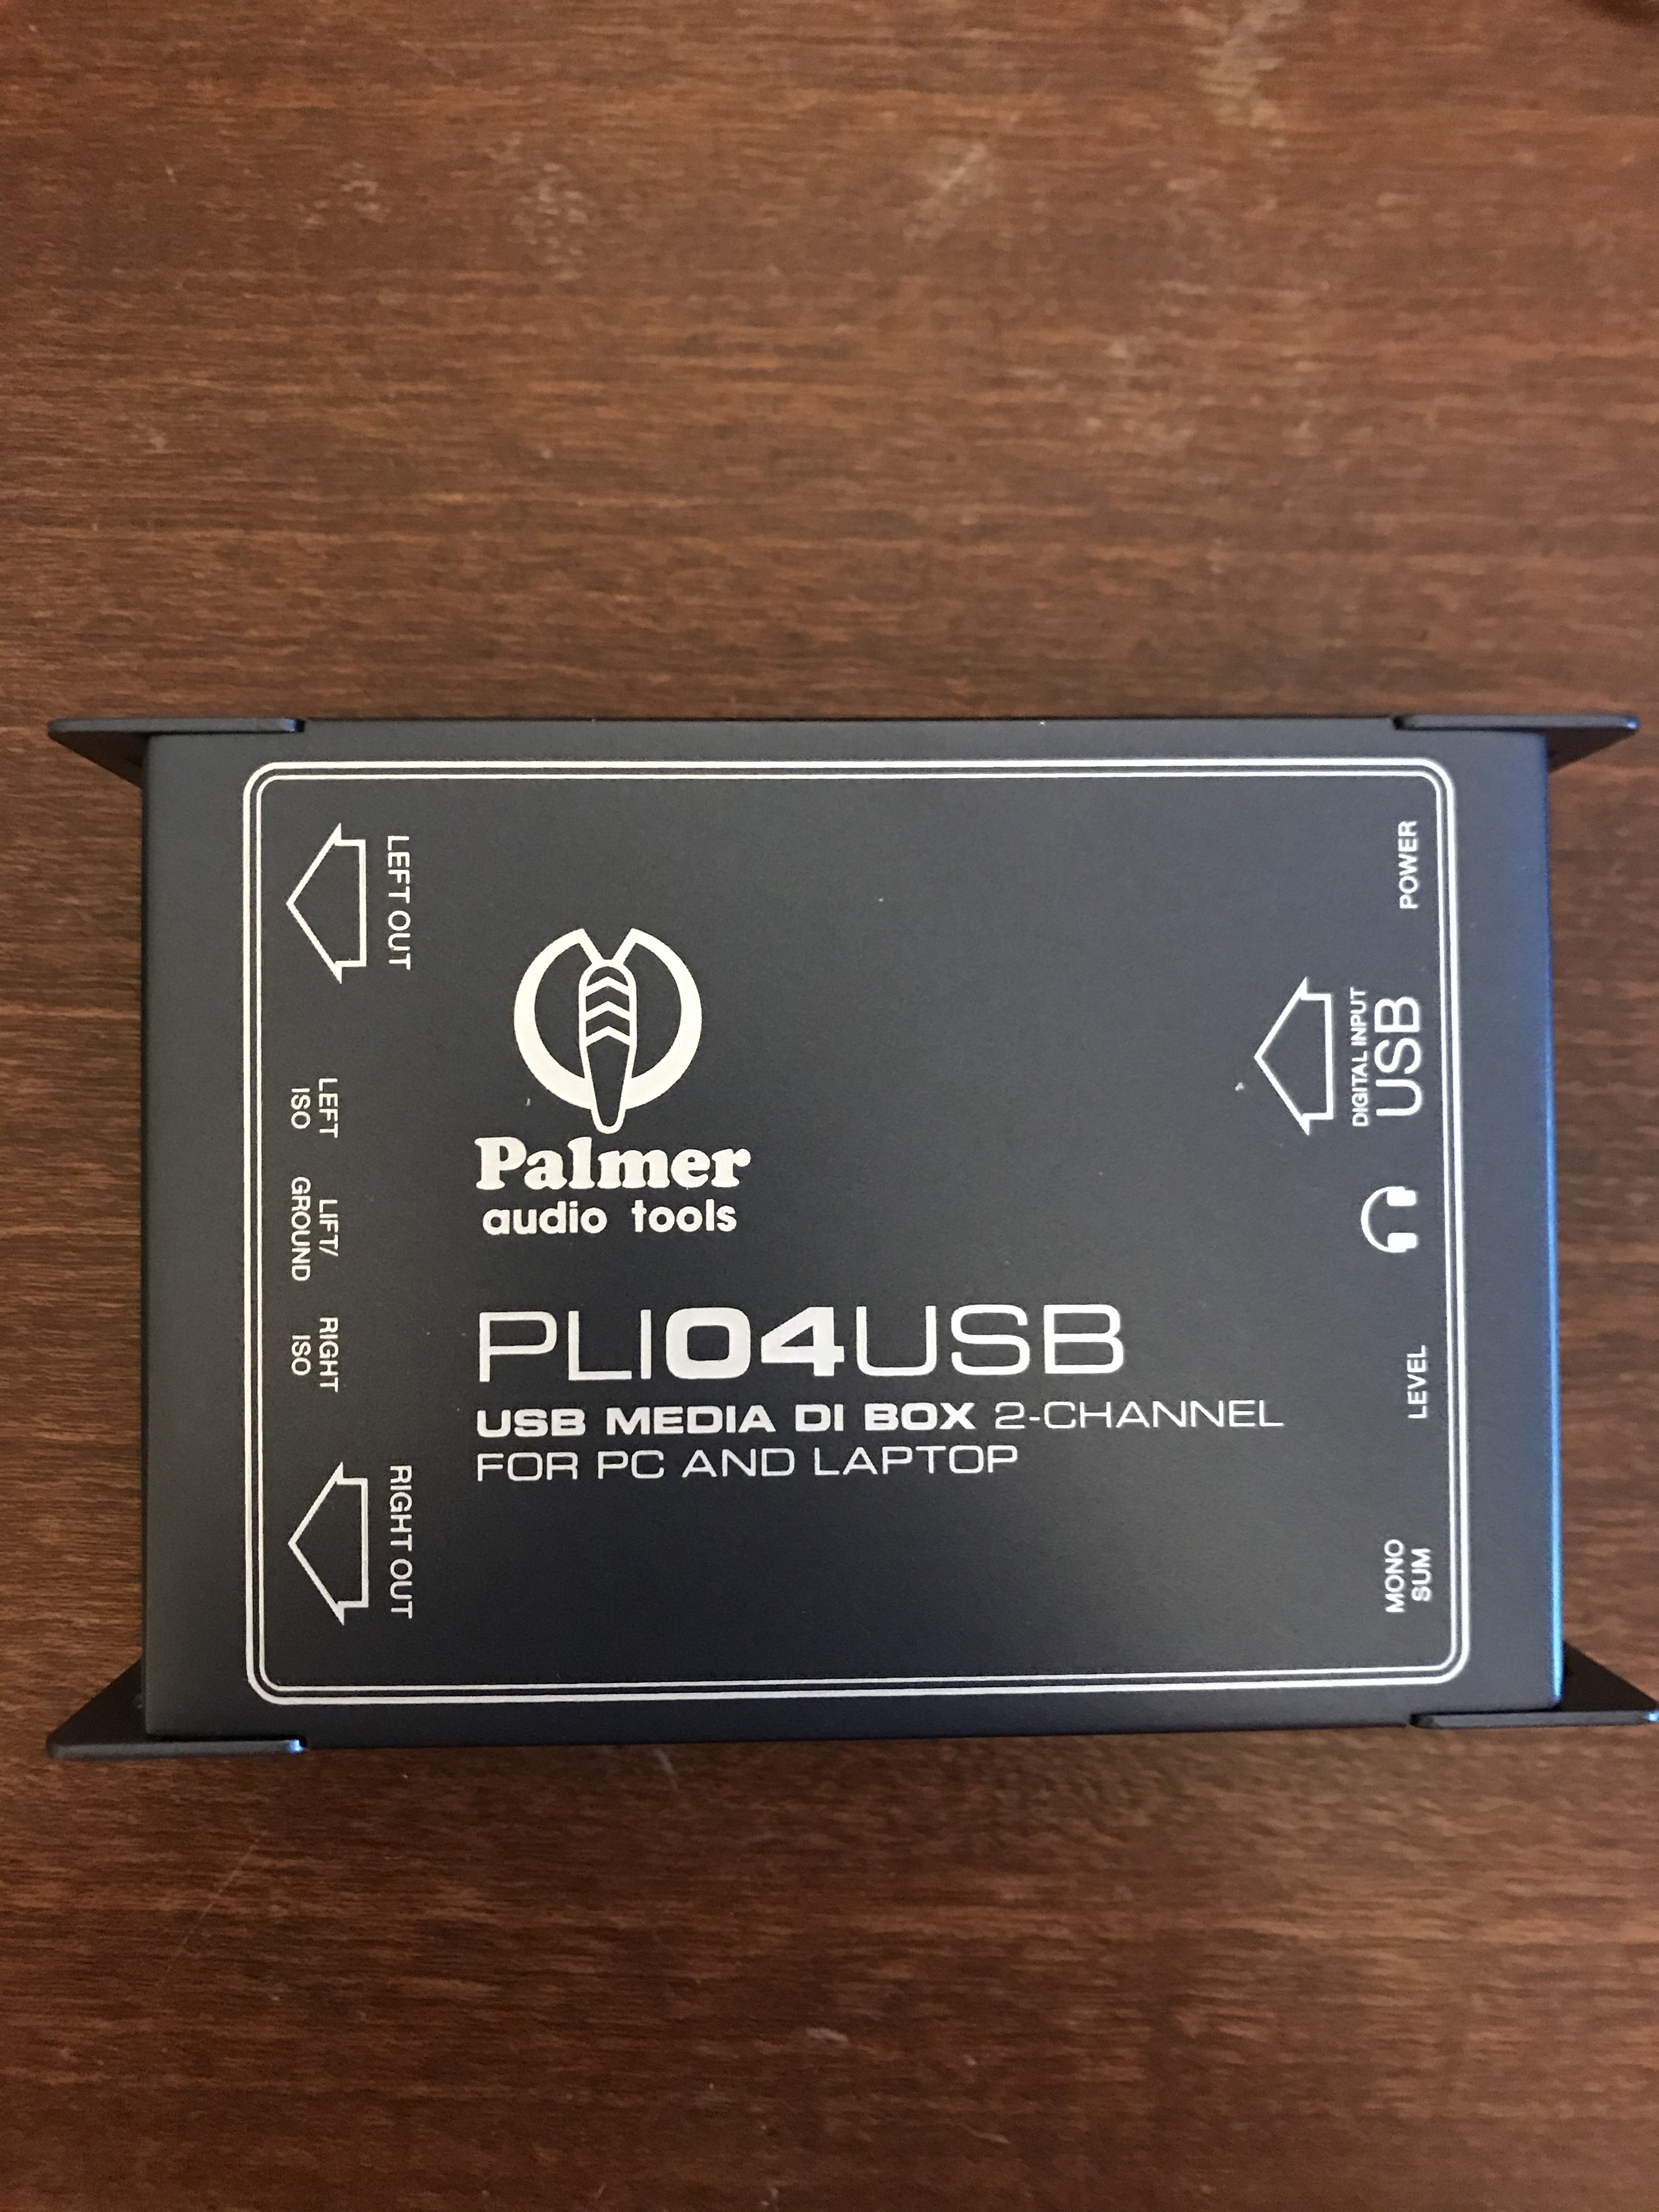 PLI 04 USB 